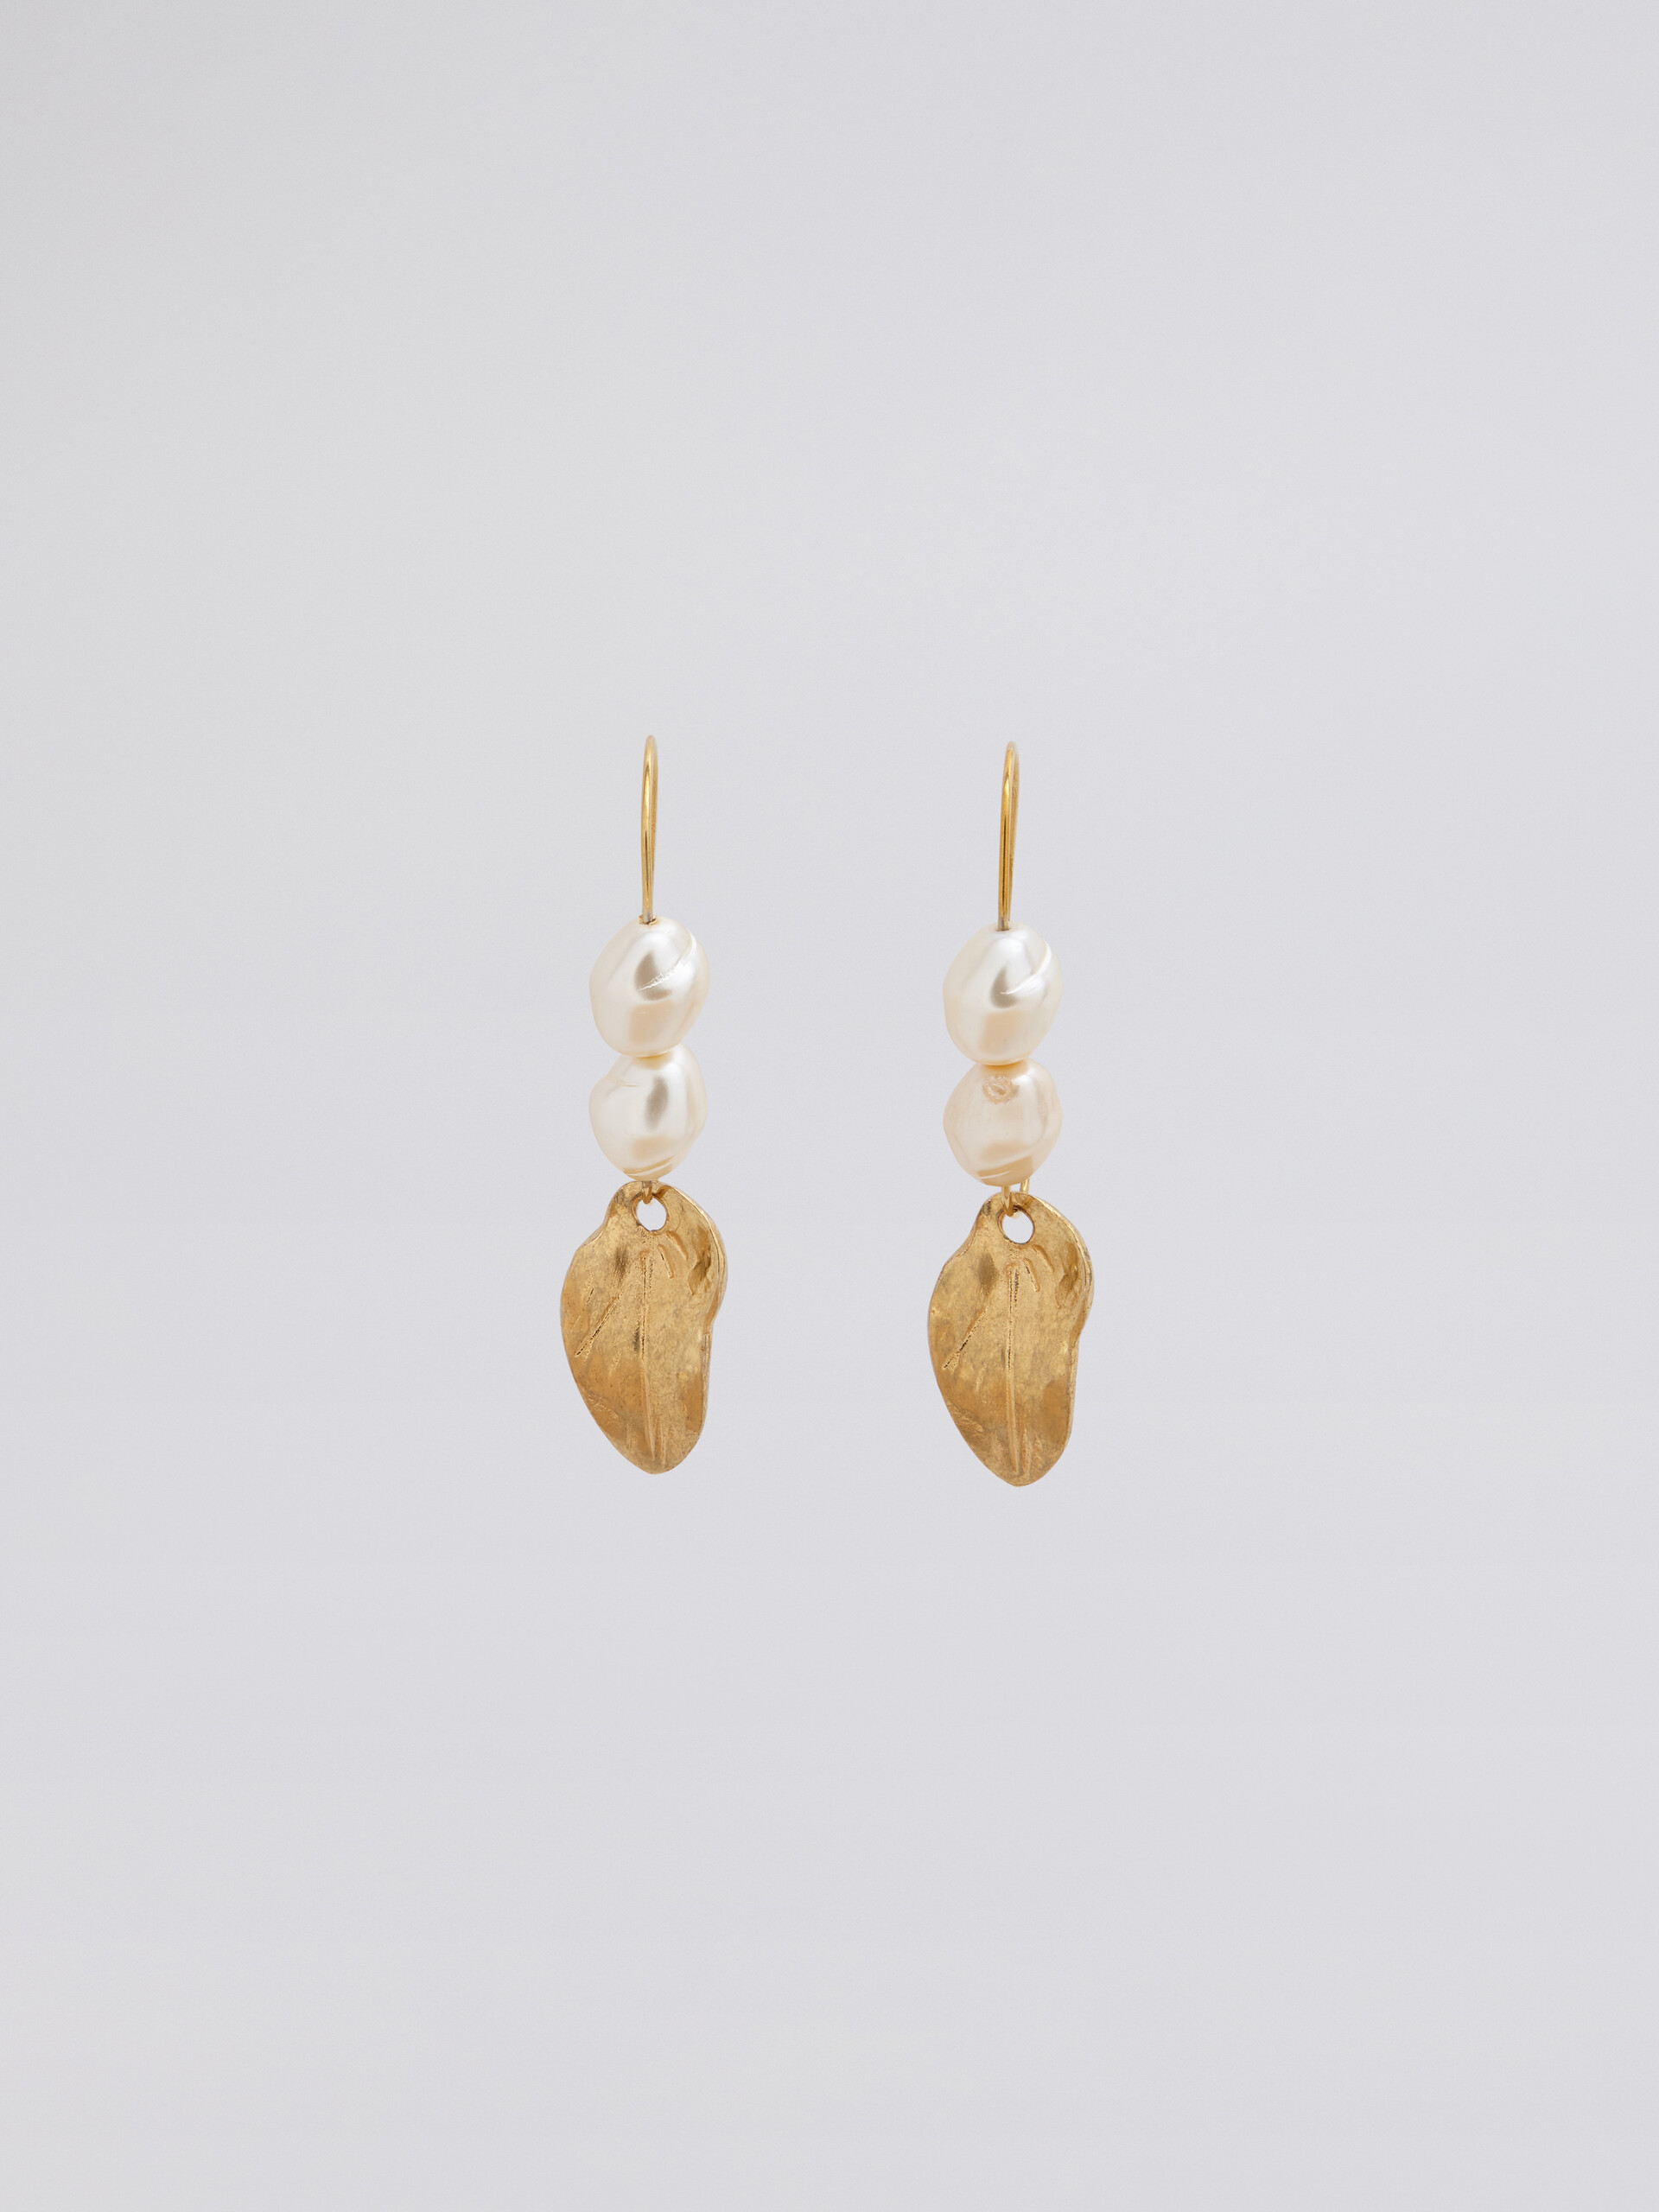 Boucles d'oreilles dormeuses NATURE en métal doré avec perles et feuille - Boucles d’oreilles - Image 1